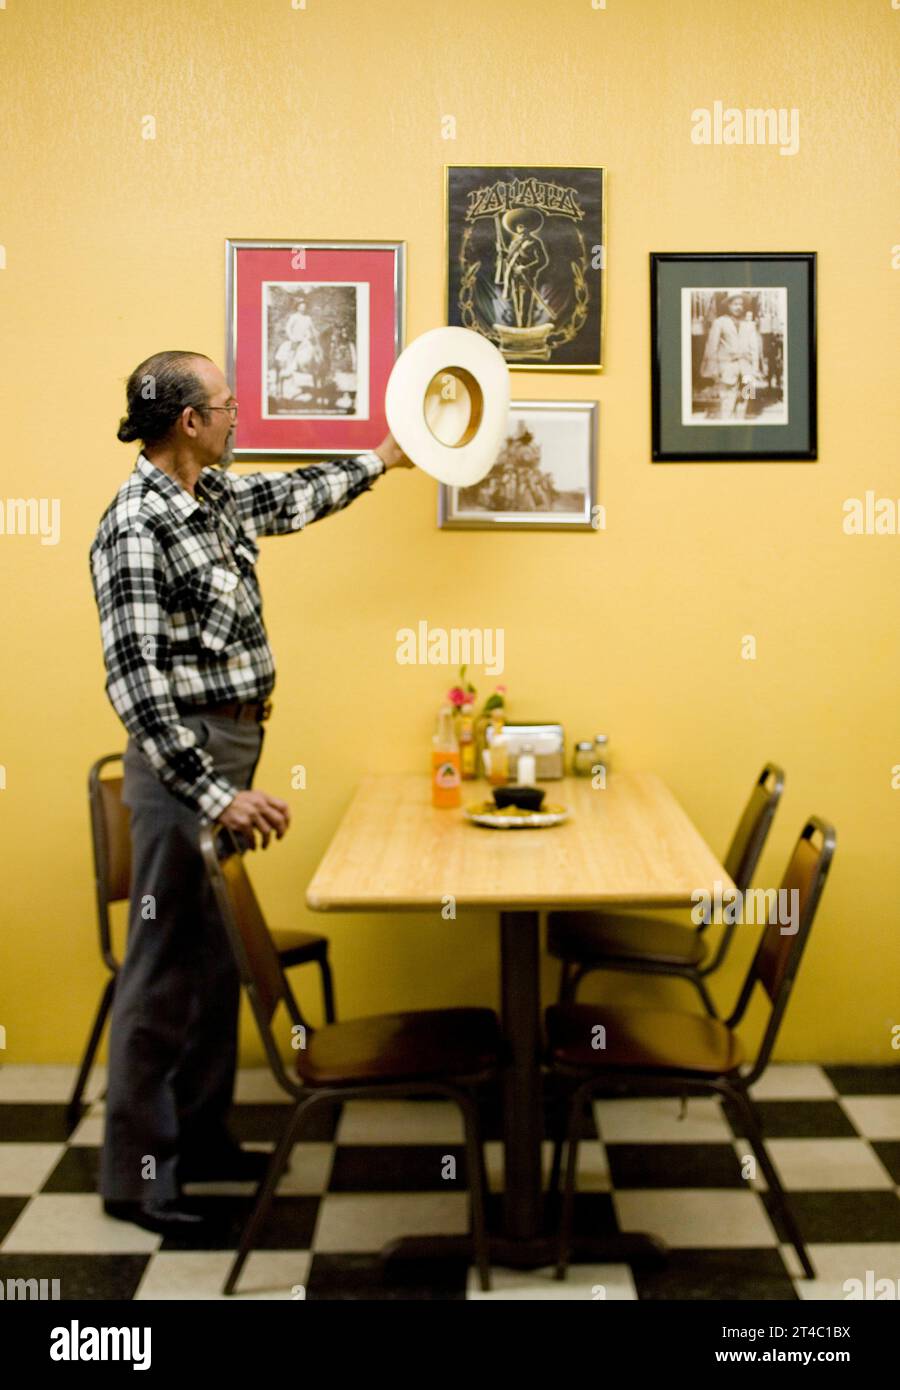 Ein Porträt eines lateinamerikanischen Mannes mit seinem Cowboyhut in einem Restaurant. Stockfoto